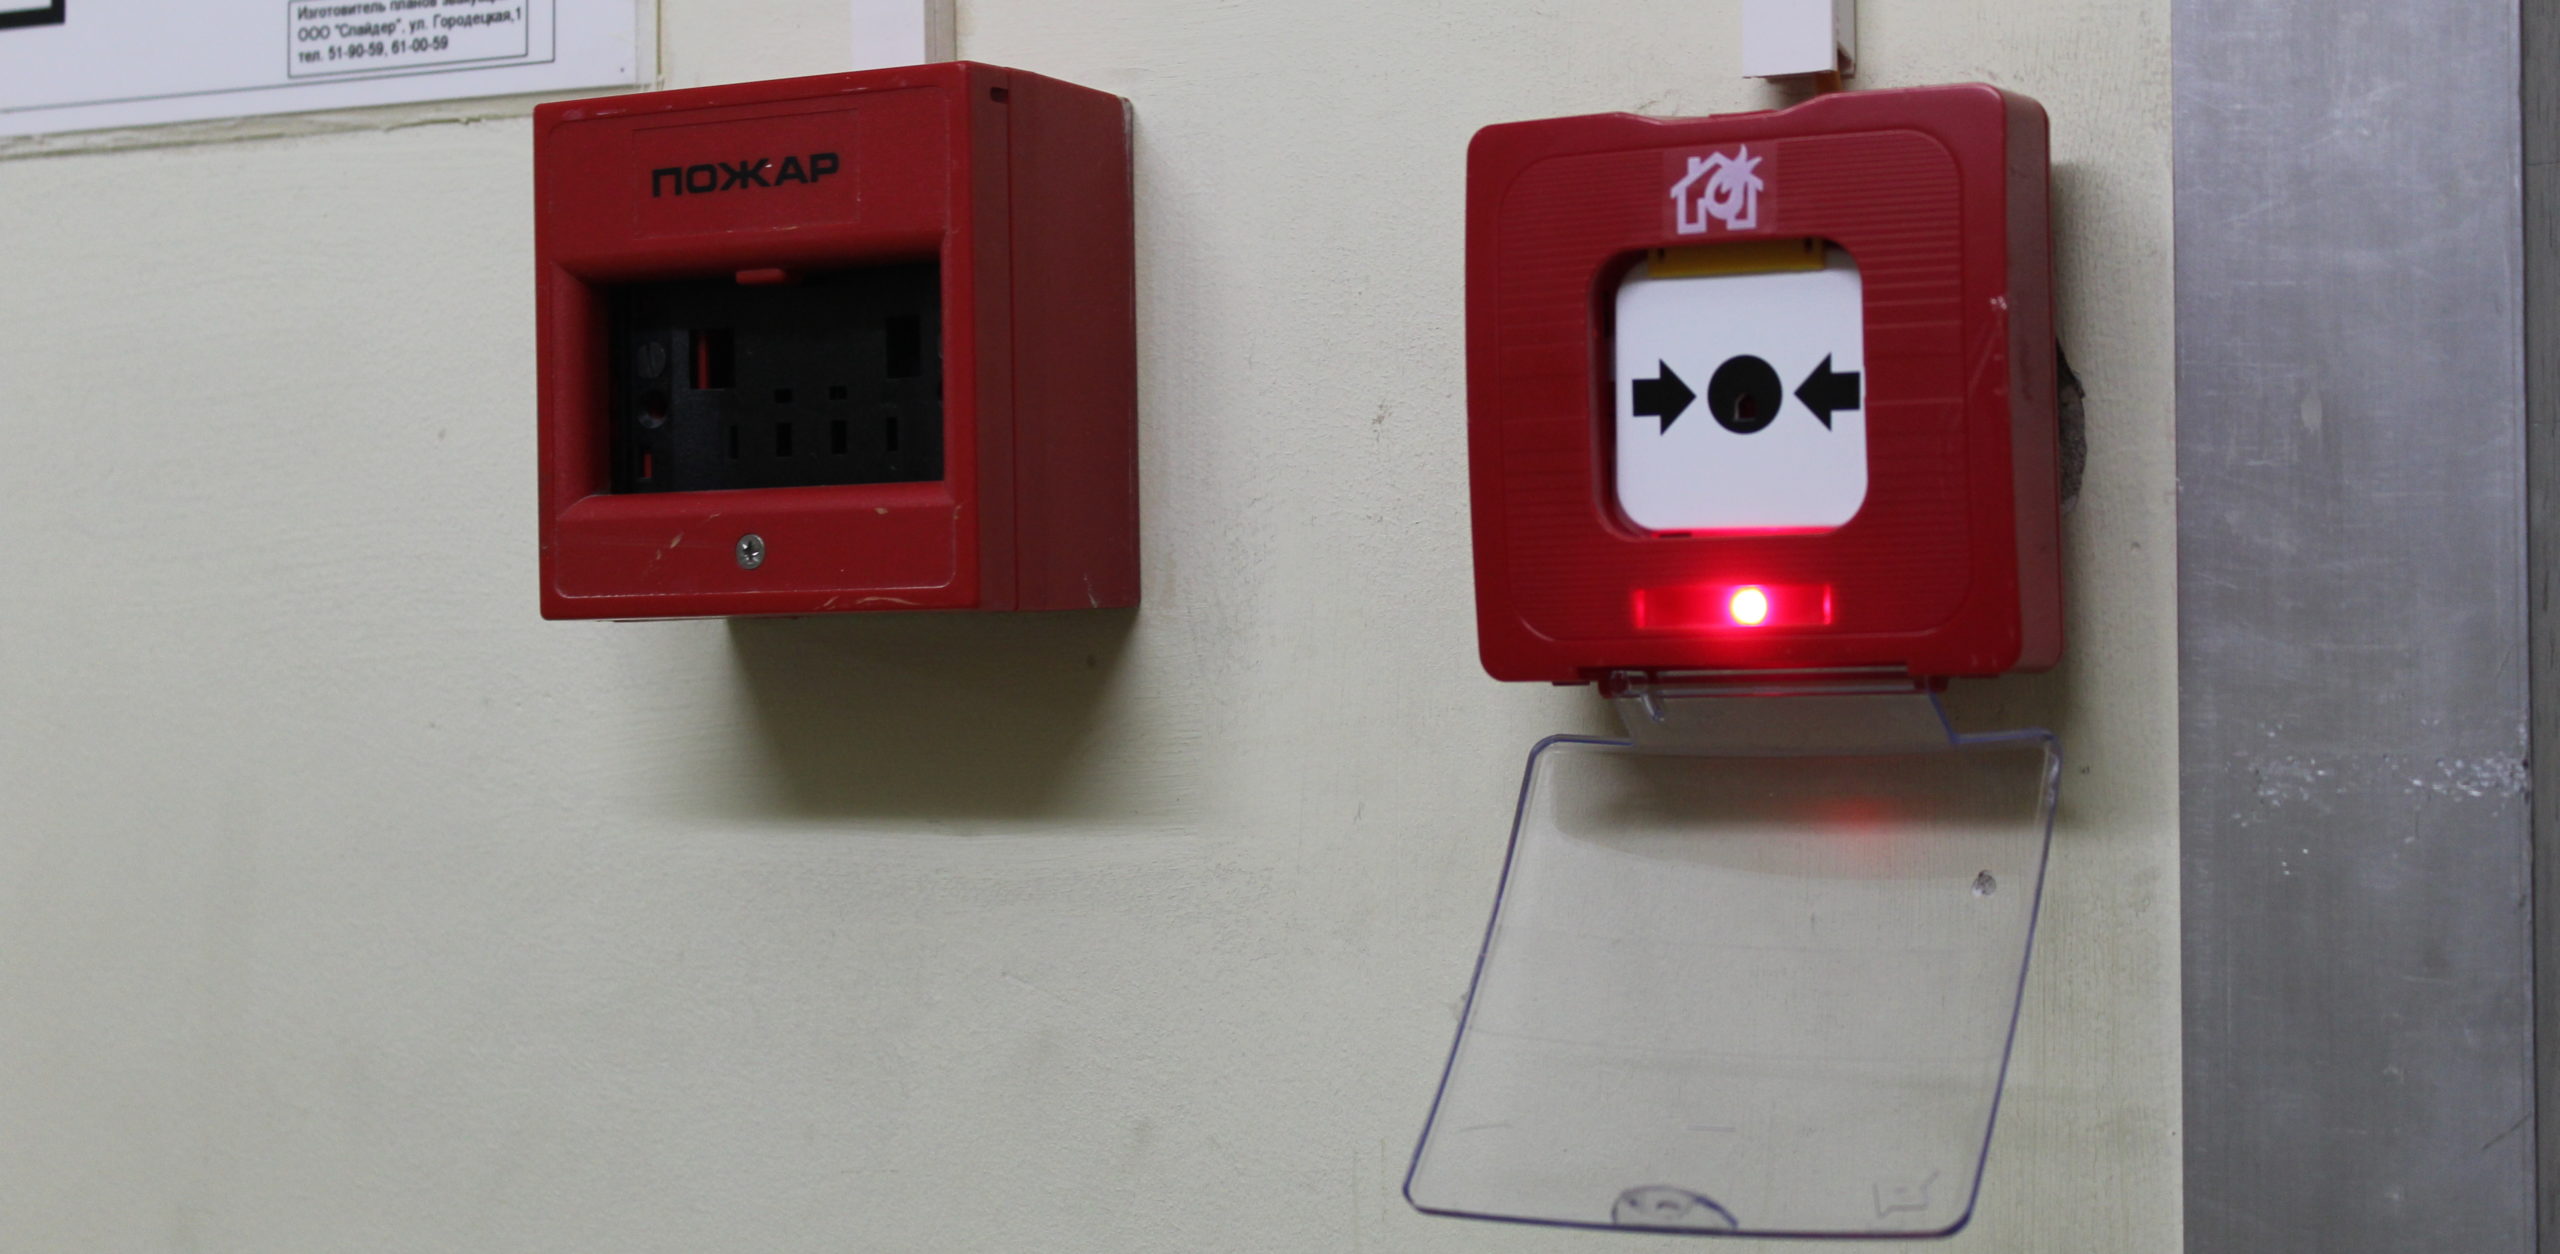 Сработала пожарка. Сработала пожарная сигнализация. Кнопка пожарной сигнализации в ТЦ. Коробочка пожарная сигнализация. Сработка пожарной сигнализации.